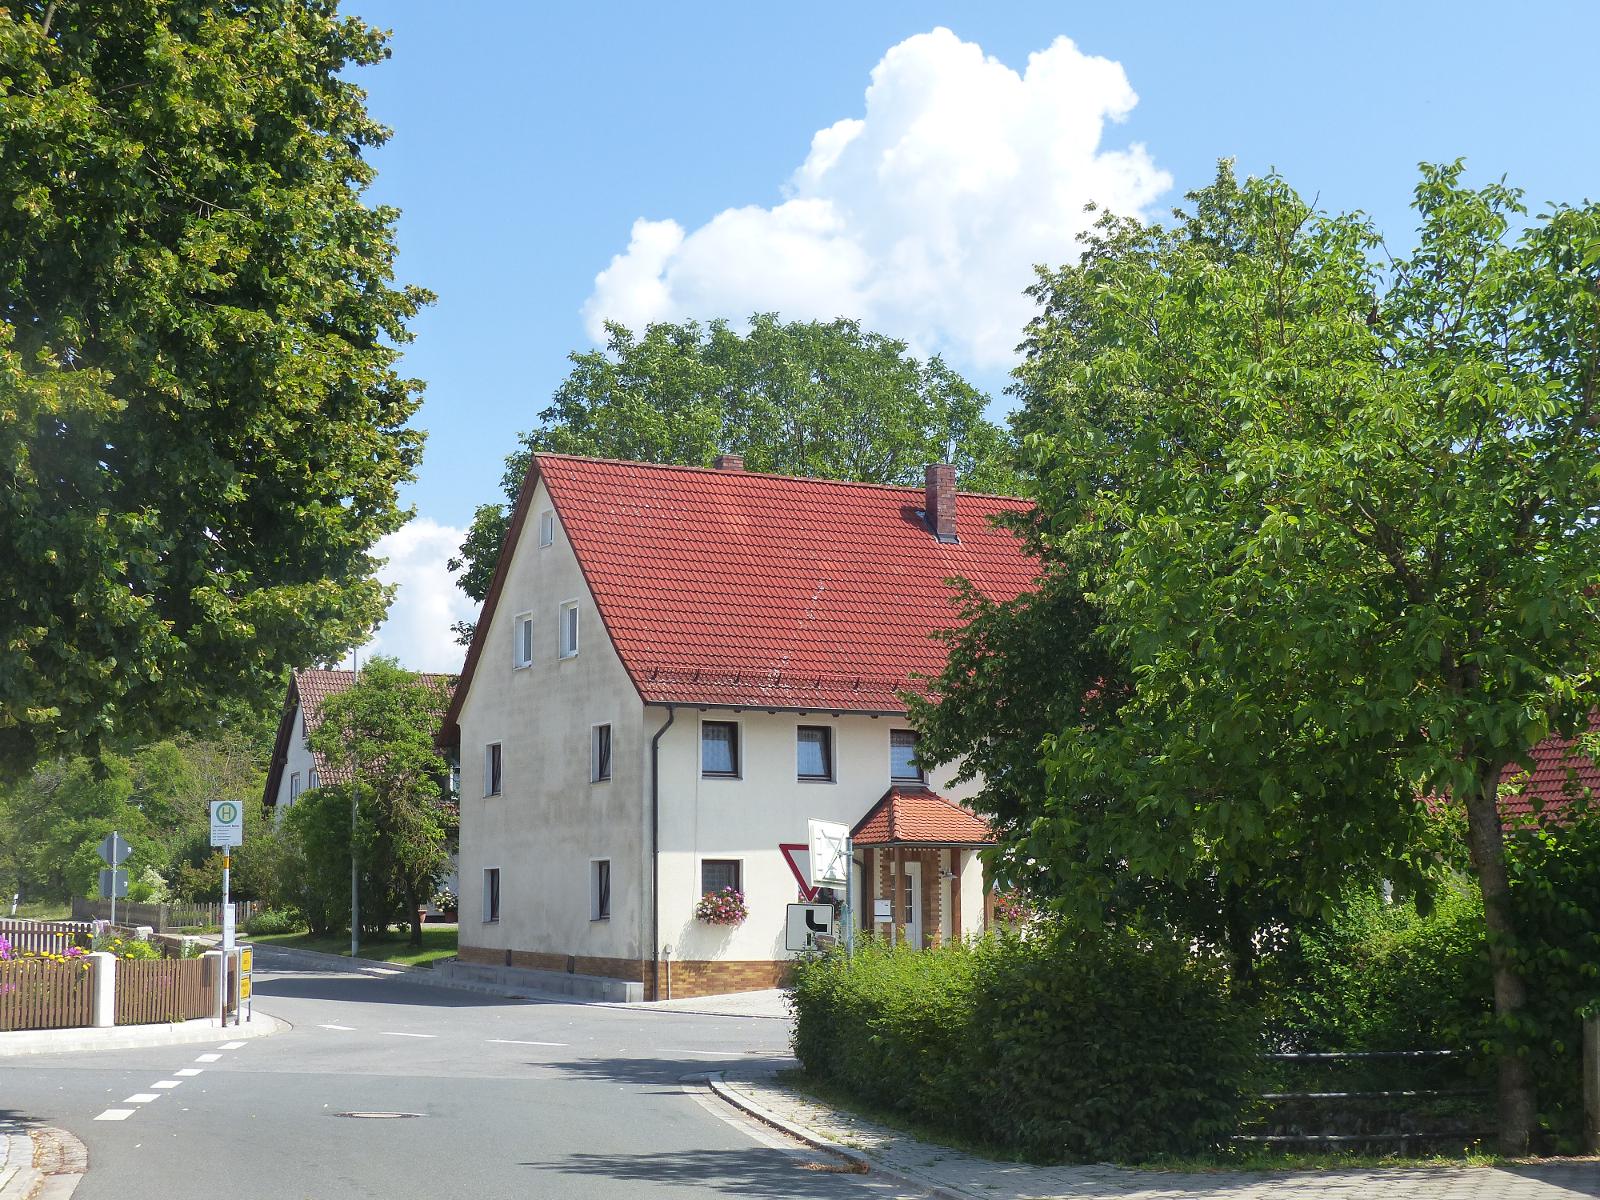 Das Dorf in der Wiesentalb ist ein Gemeindeteil des Marktes Gößweinstein. Es befindet sich etwa dreieinhalb Kilometer südwestlich von Gößweinstein auf 498 m ü. NHN.